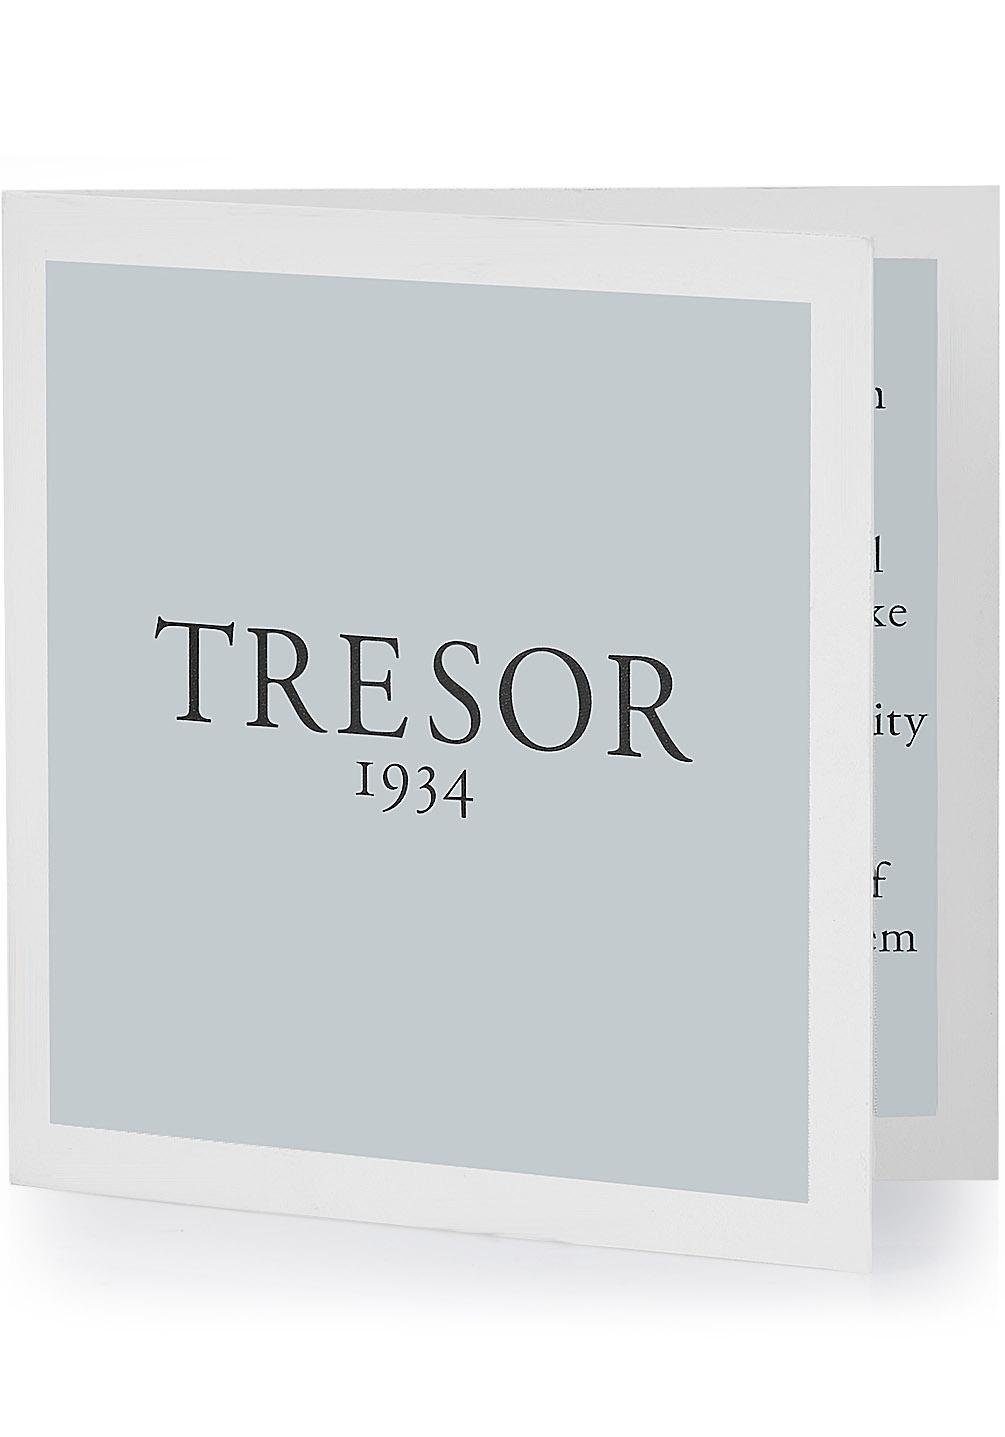 Tresor 1934 Trauring 60186016, wahlweise mit ohne Zirkonia silberfarben-roségoldfarben 60186015, oder